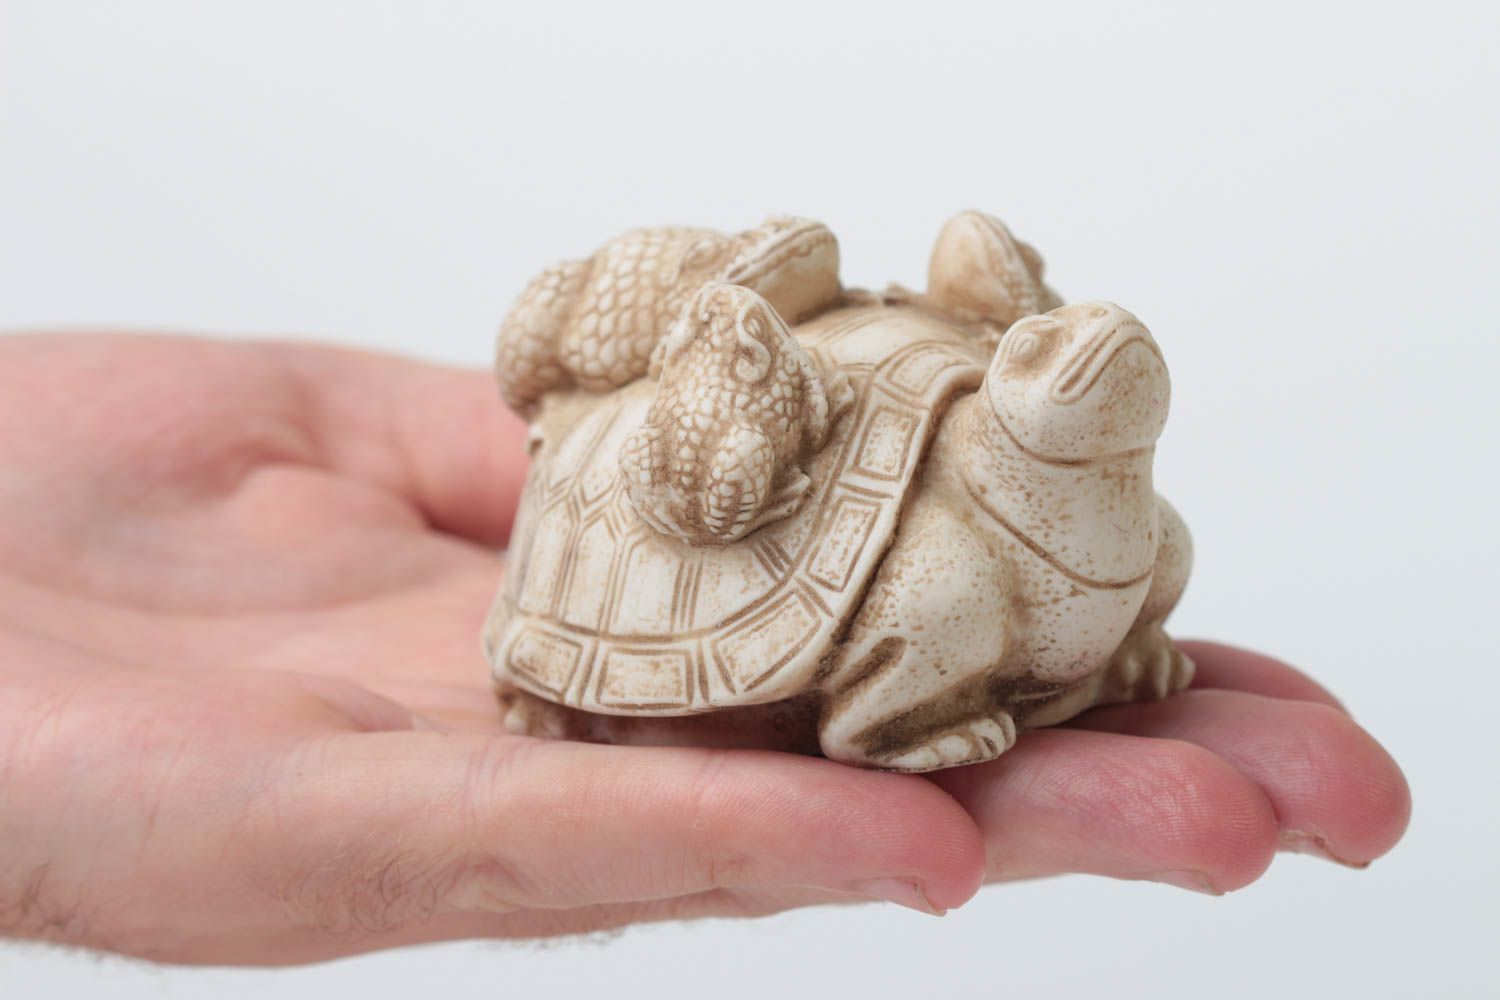 Статуэтка из полимерной смолы ручной работы Черепаха с жабами сувенир на подарок фото 5